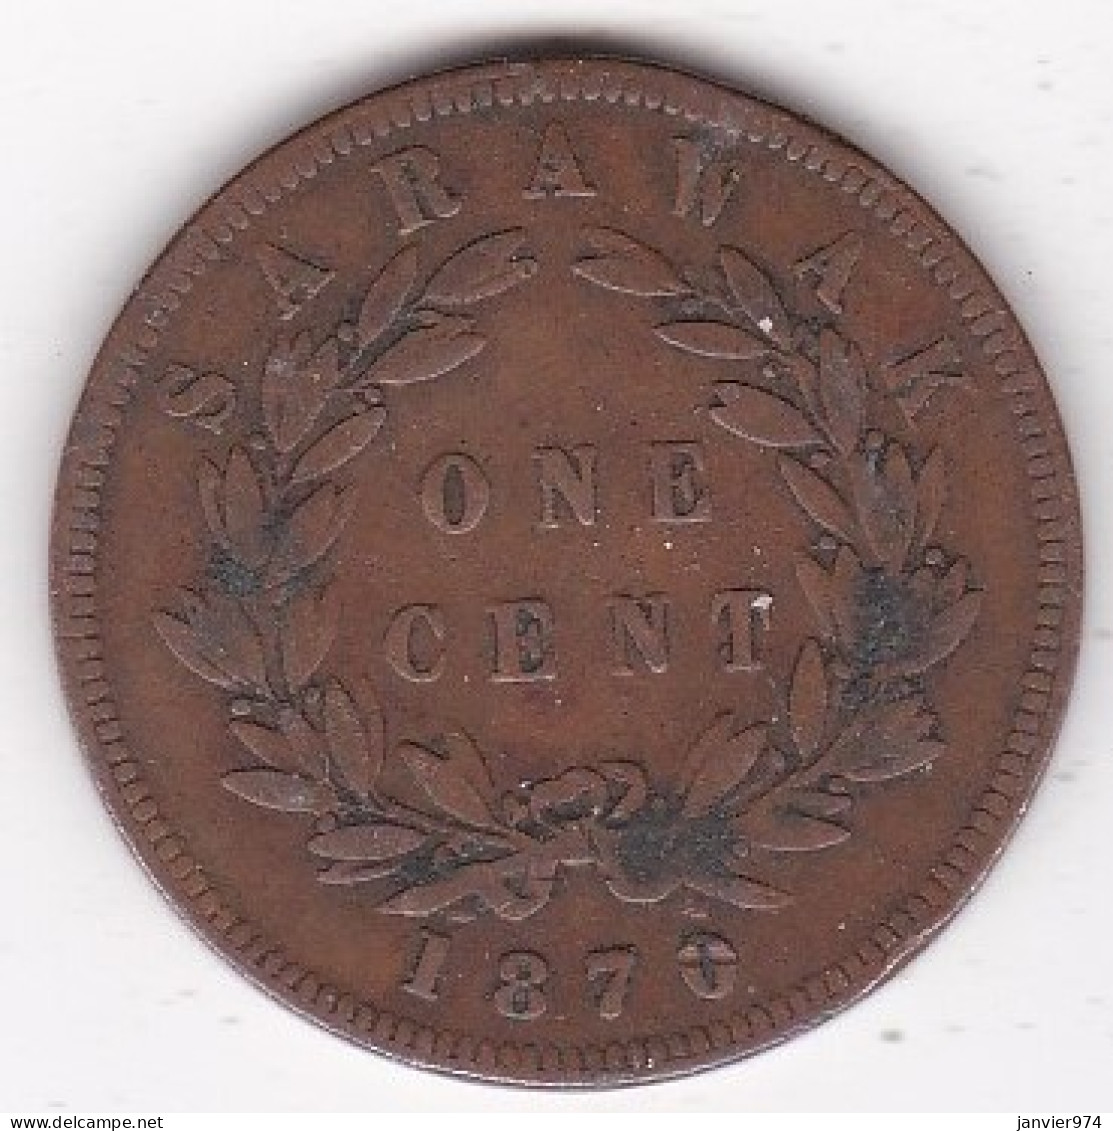 Sarawak . One Cent 1870 . C. BROOKE RAJAH. KM# 6 - Malaysia